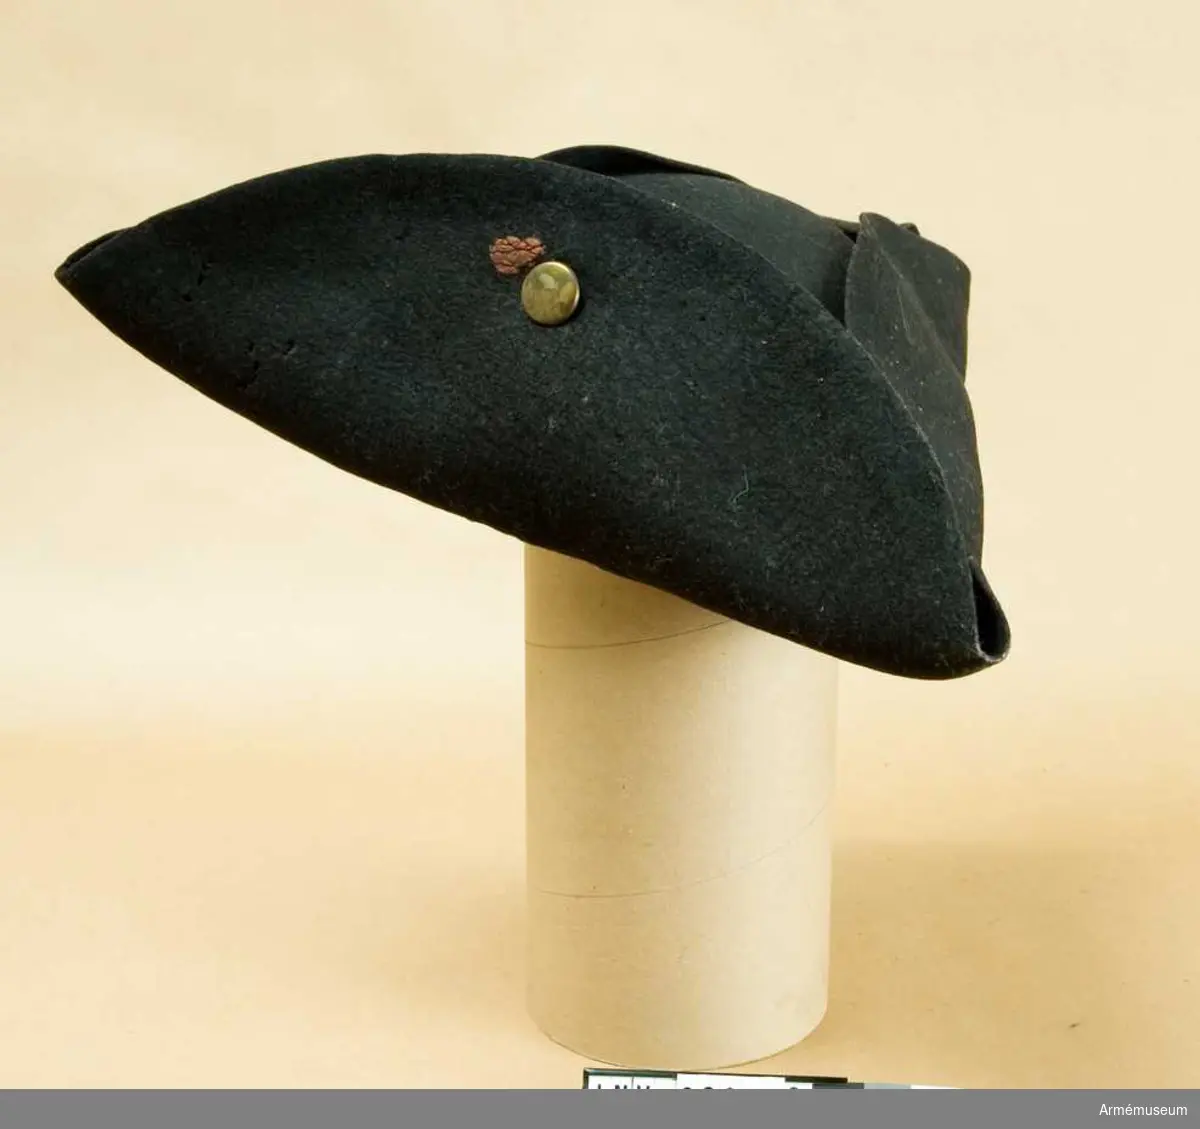 Grupp C I.
Trekantig svart hatt med mässingsknapp och rester av rött lacksigill.